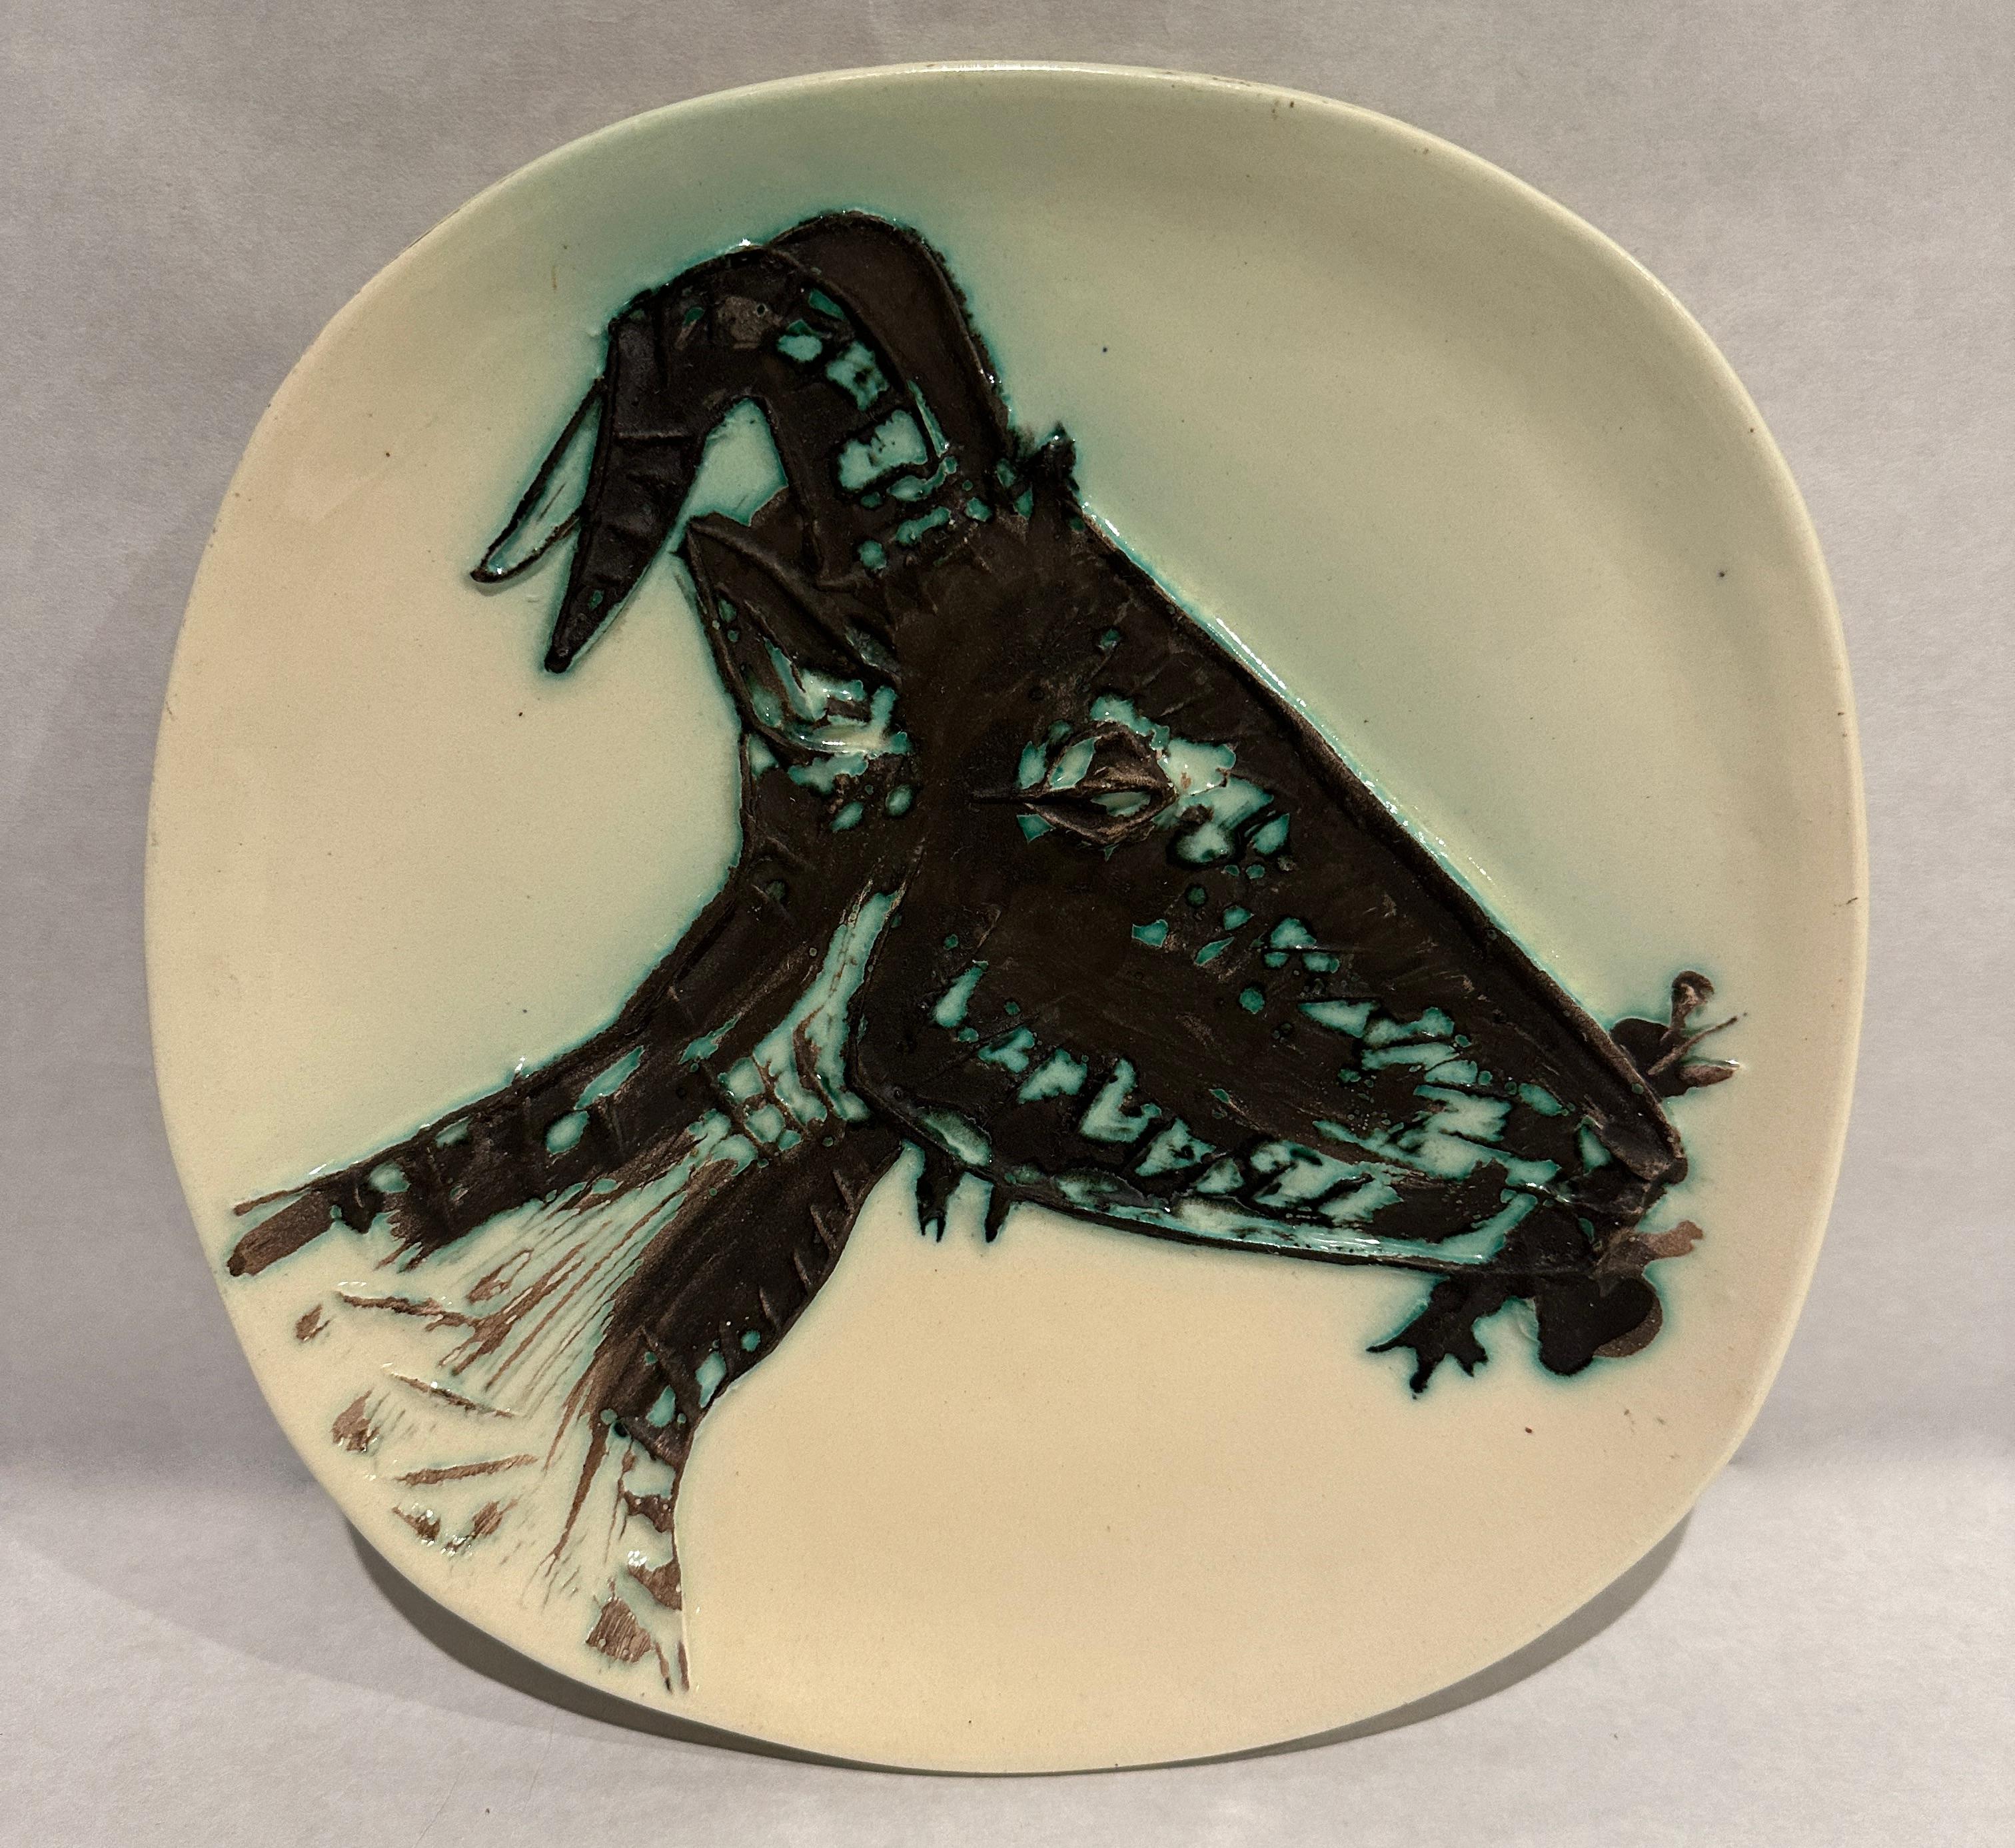 This Picasso ceramic plate 